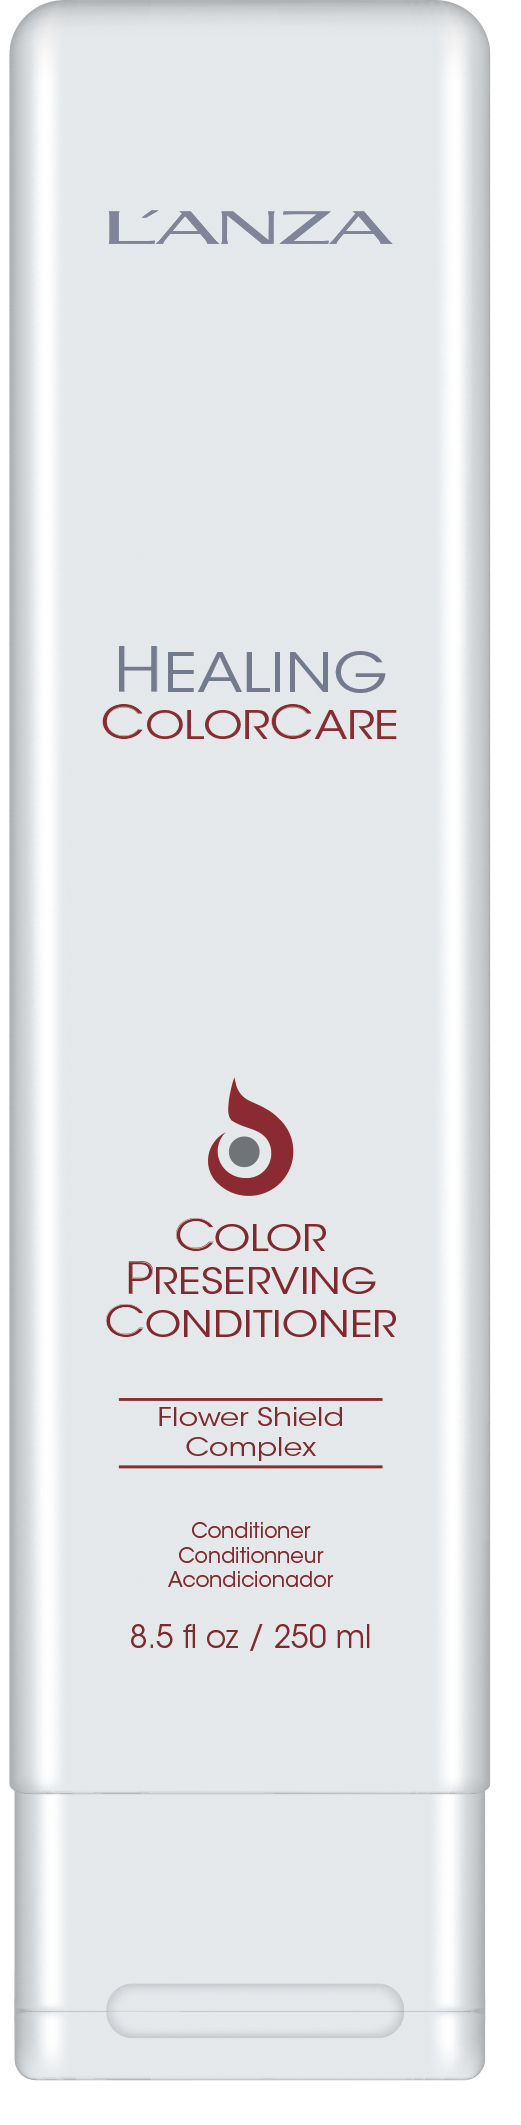 L'ANZA  Healing Colorcare Preserving Conditioner